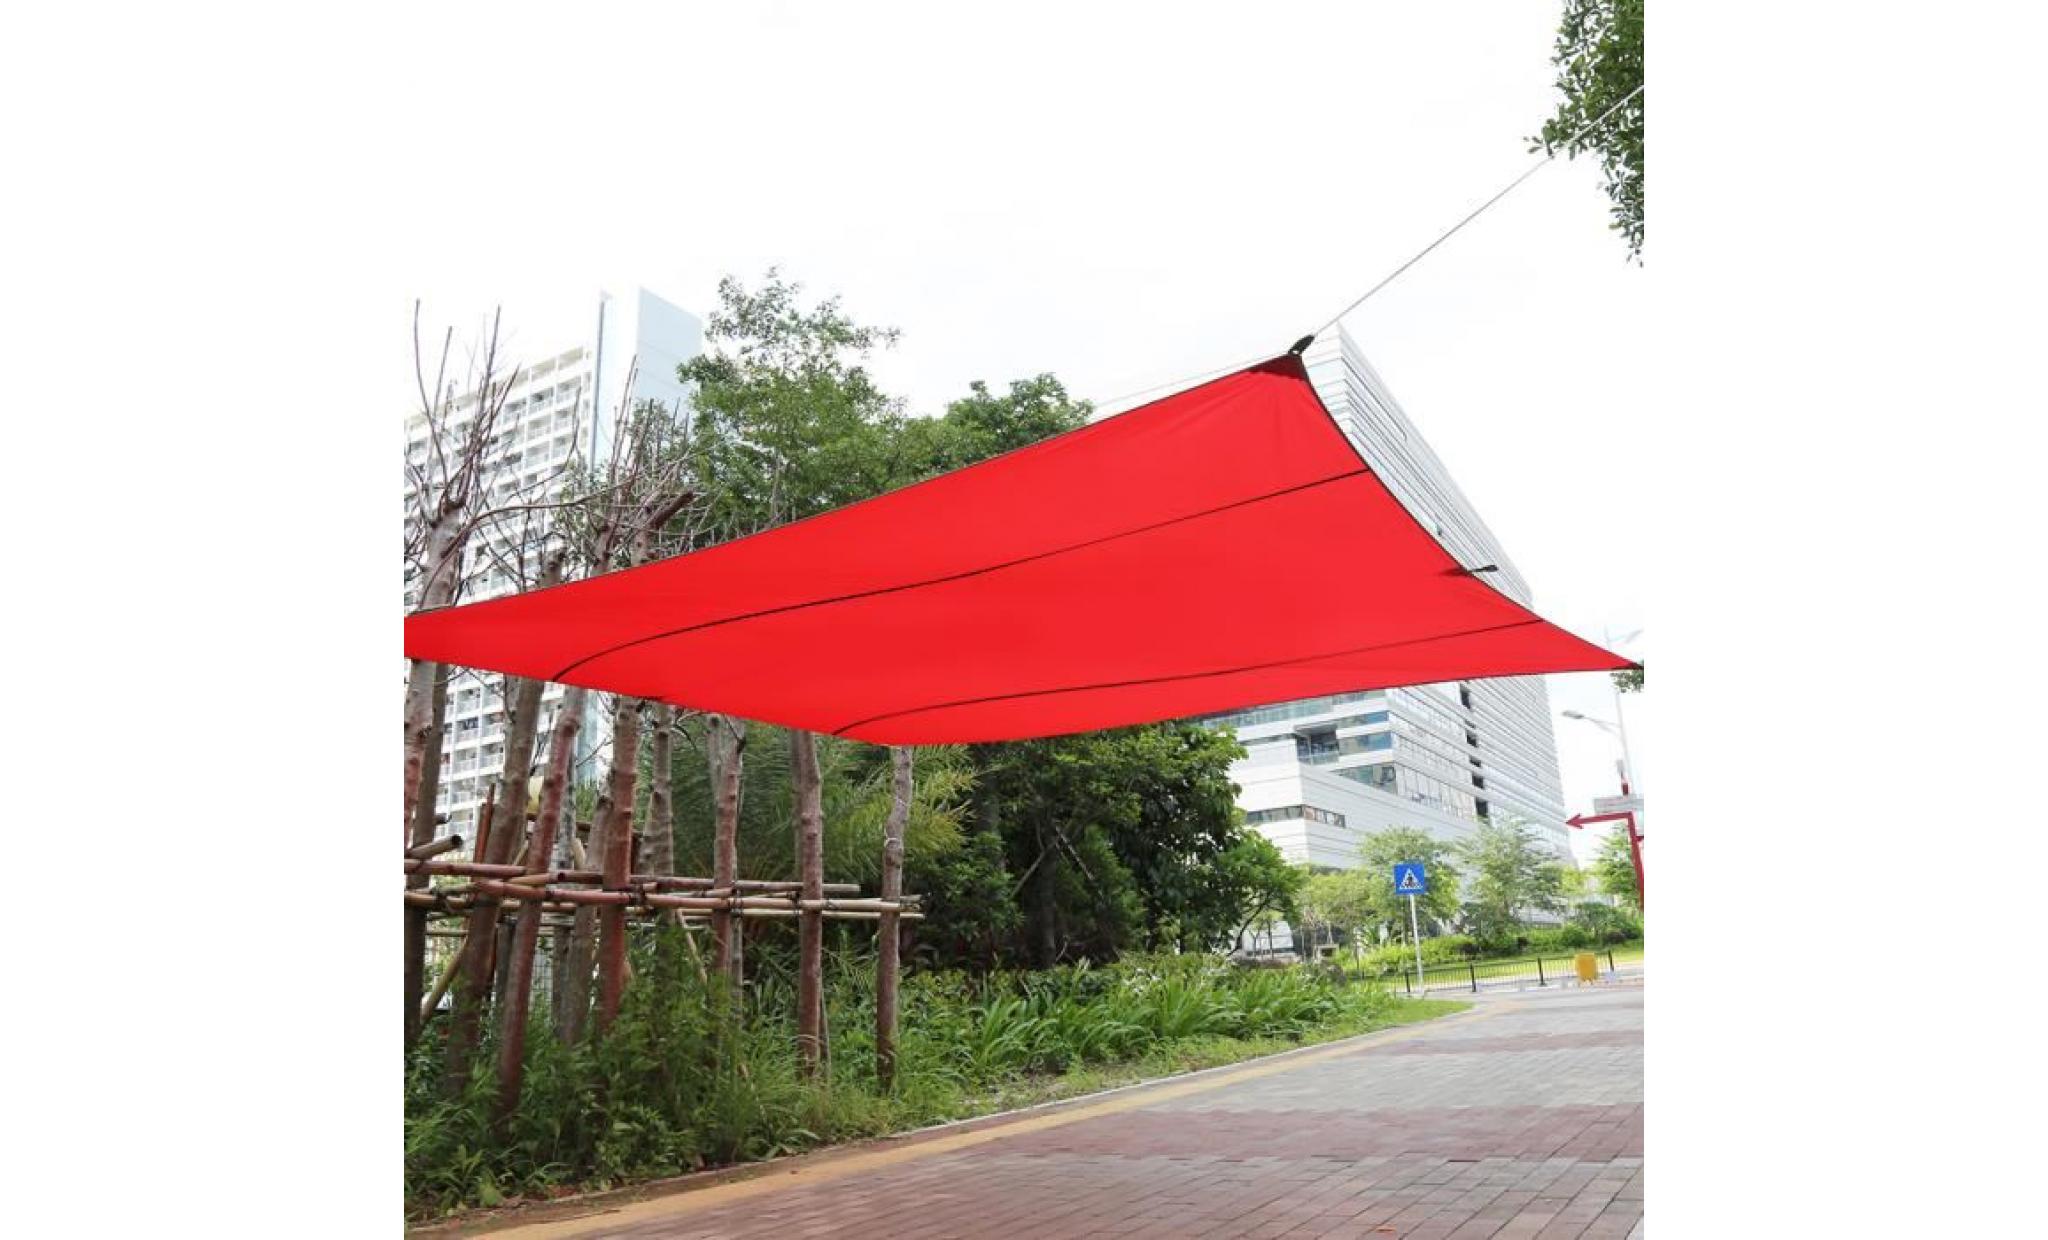 voile d'ombrage toile d'ombrage   4.5m*5m rouge   rectangulaire polyester auvent pour extérieur jardin patio